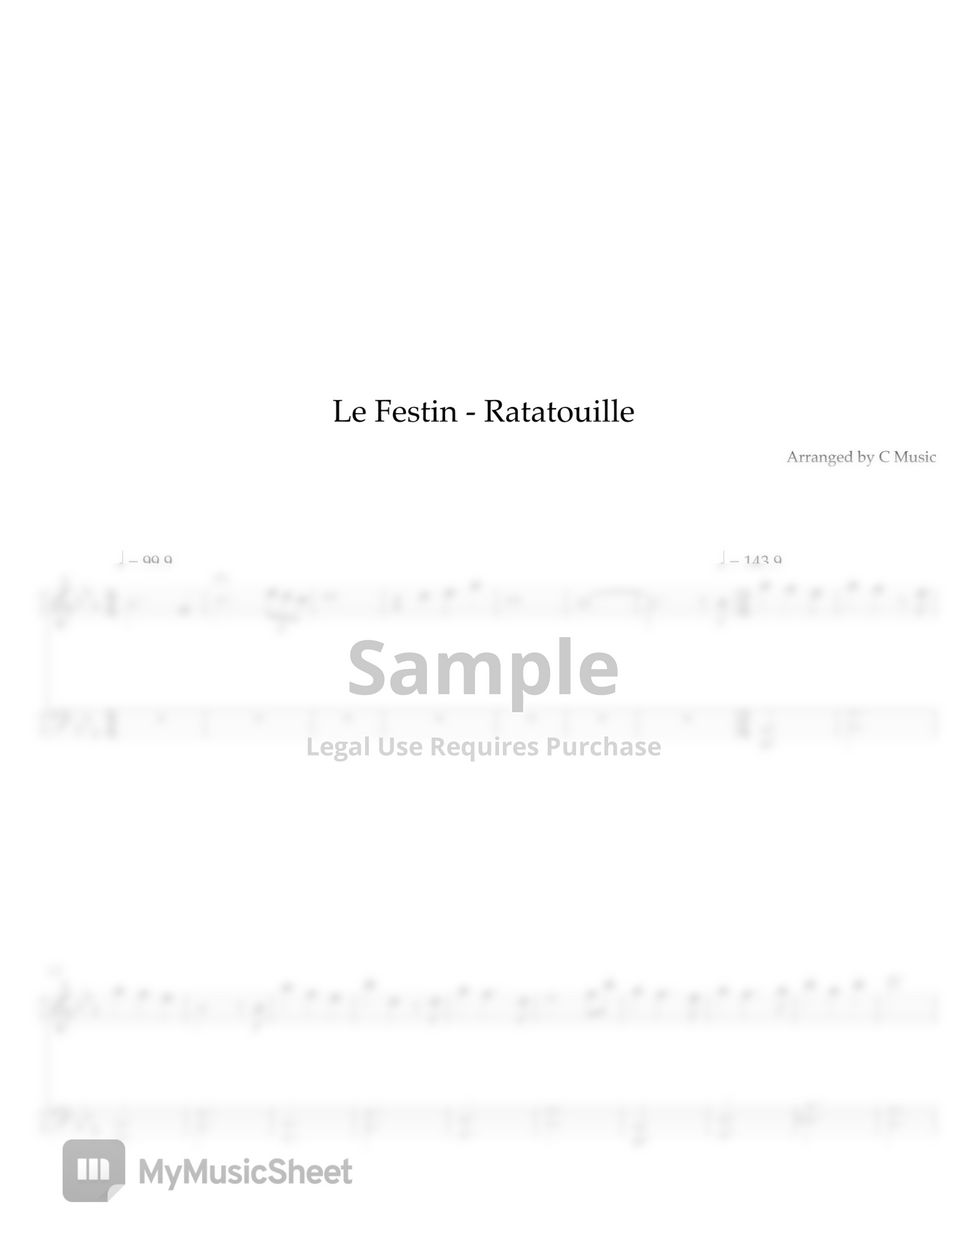 Camille Dalmais - Le Festin (Easy Version) by C Music